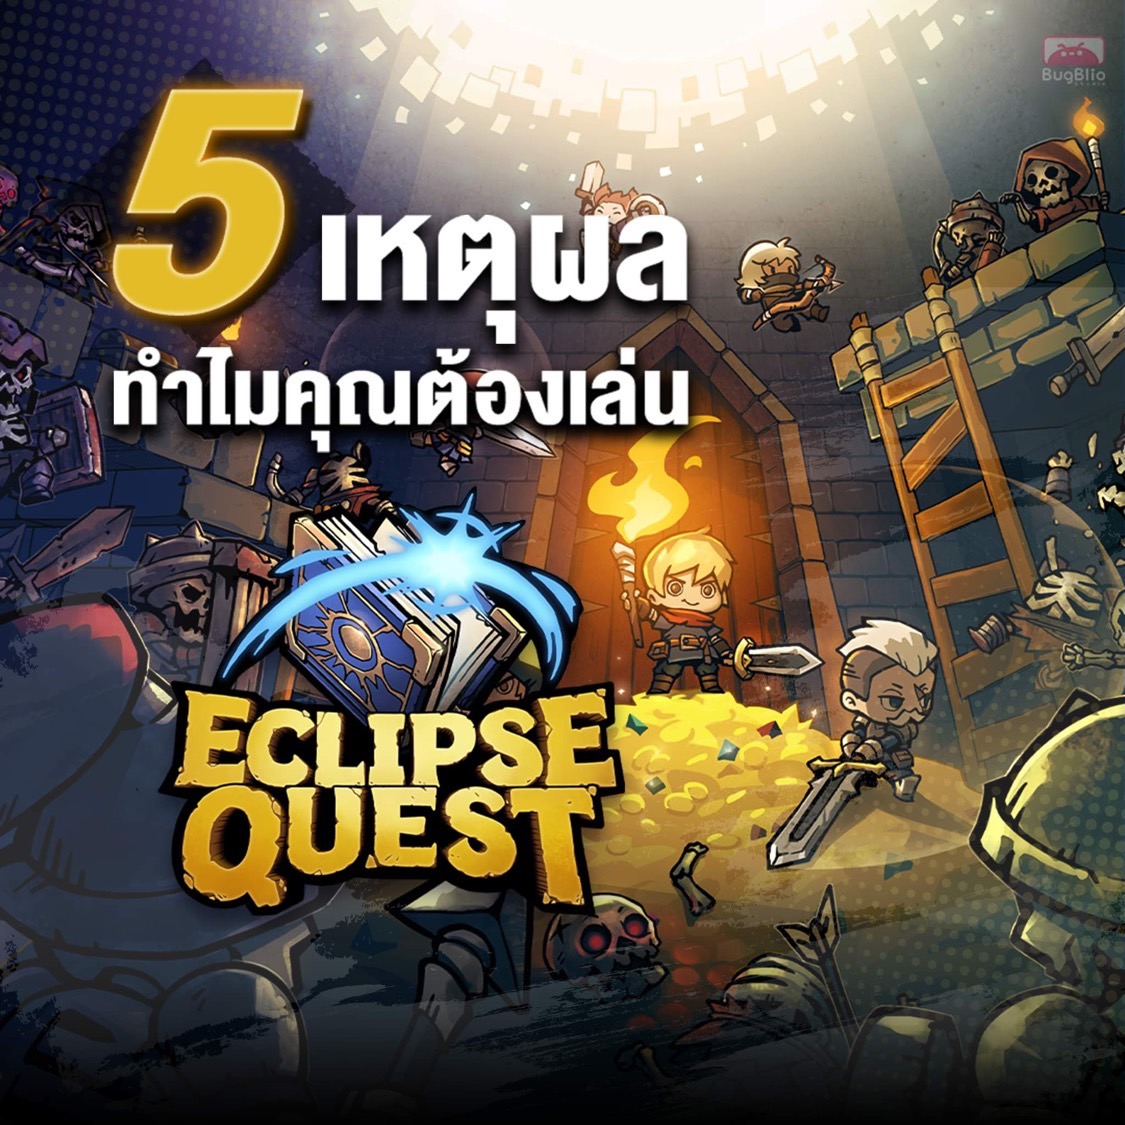 17 ตุลาคมนี้! เตรียมเป็นเจ้าของ NFT จากเกม Eclipse Quest